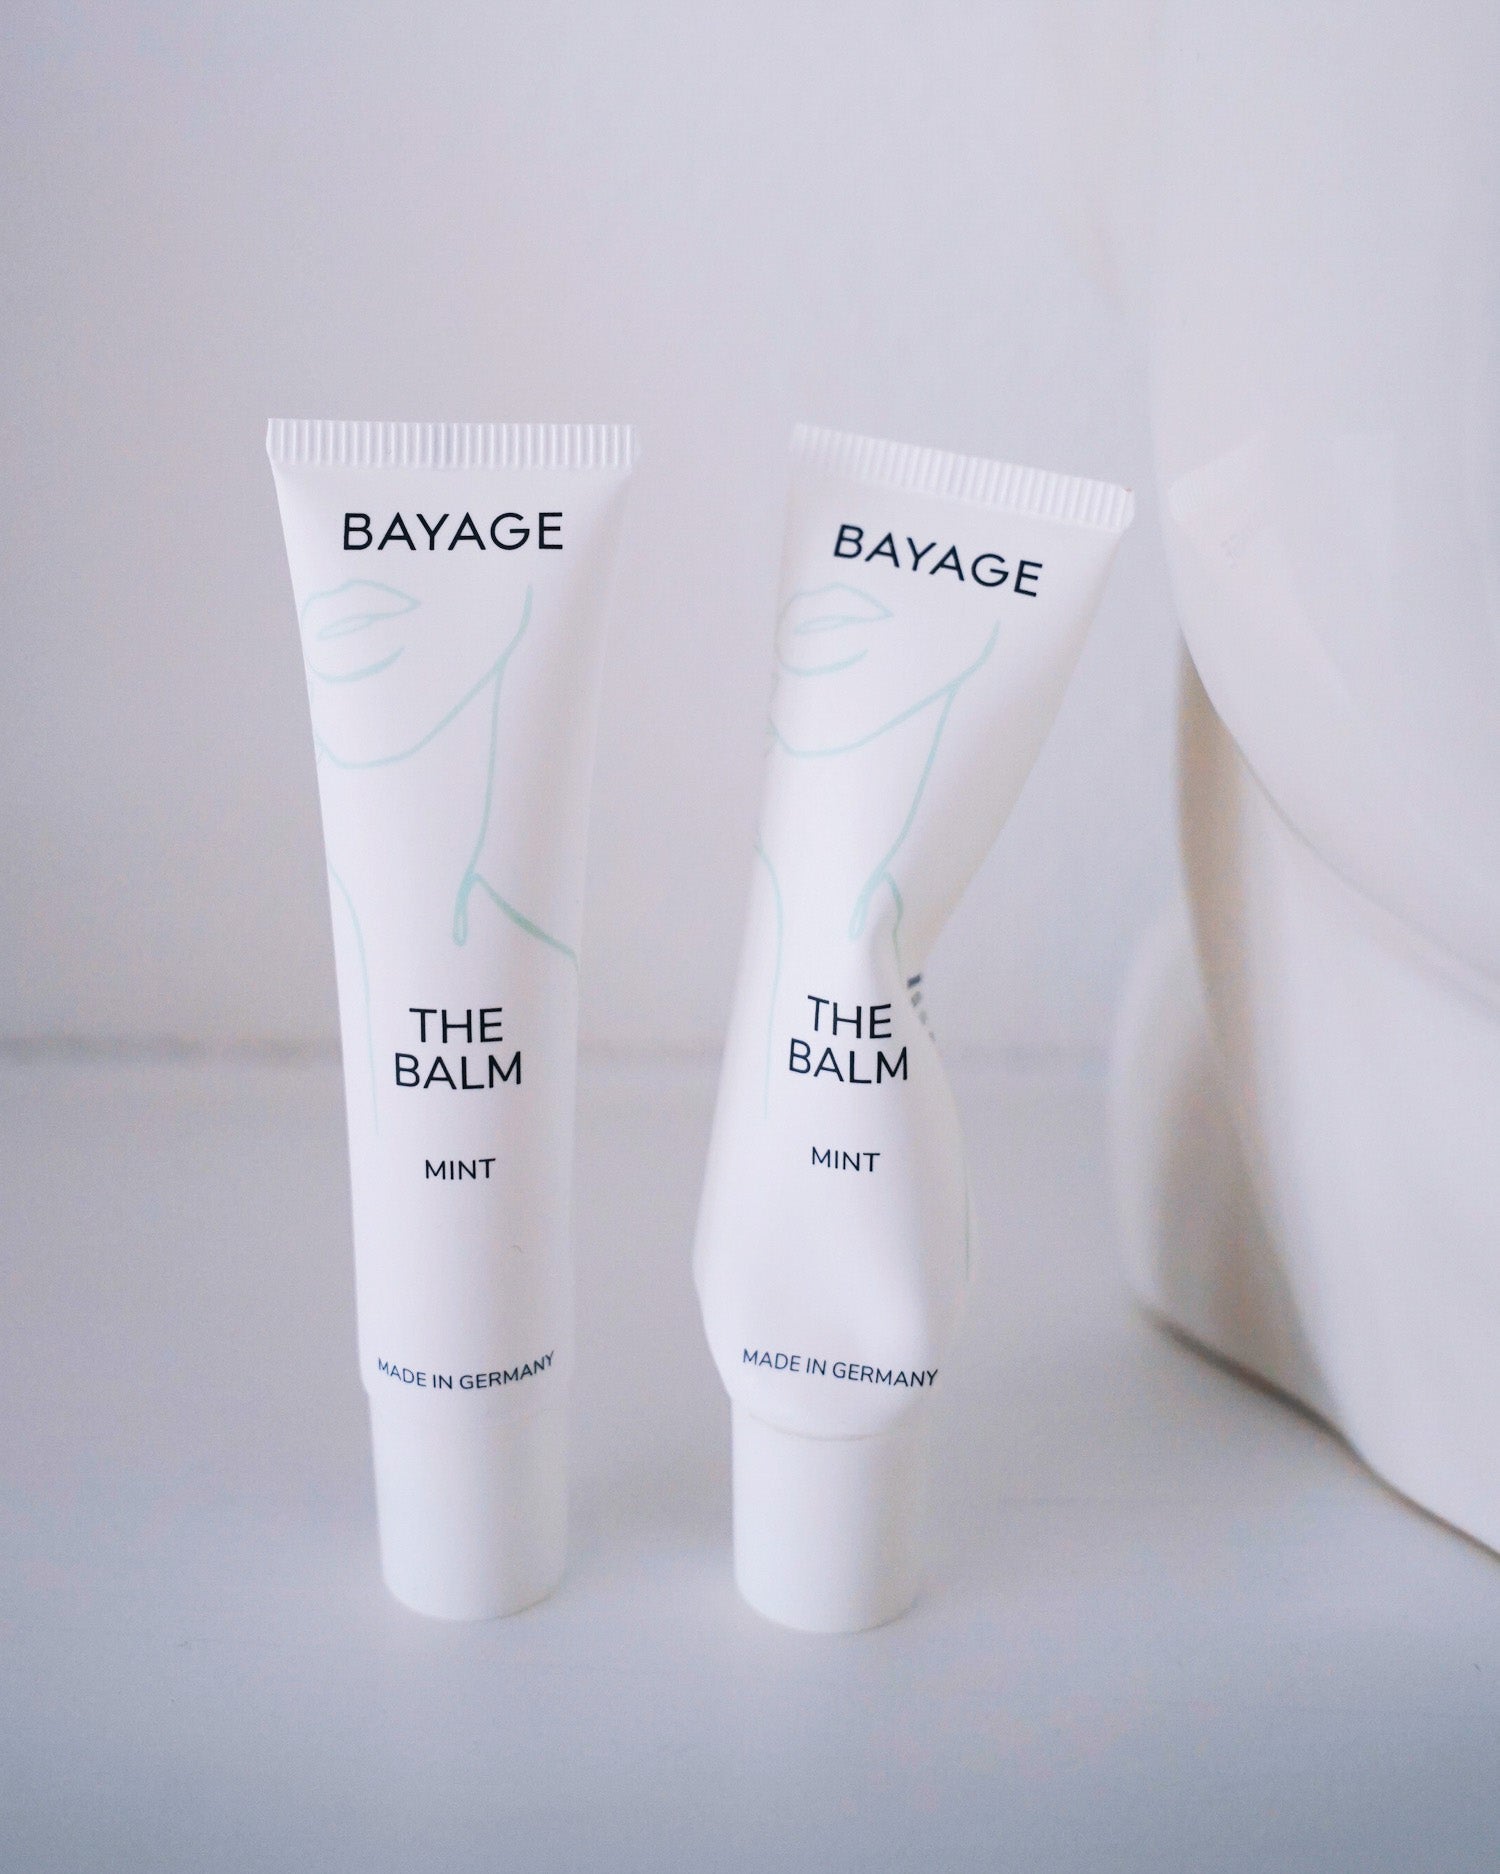 Der Bayage Lip Balm minimalistisch design